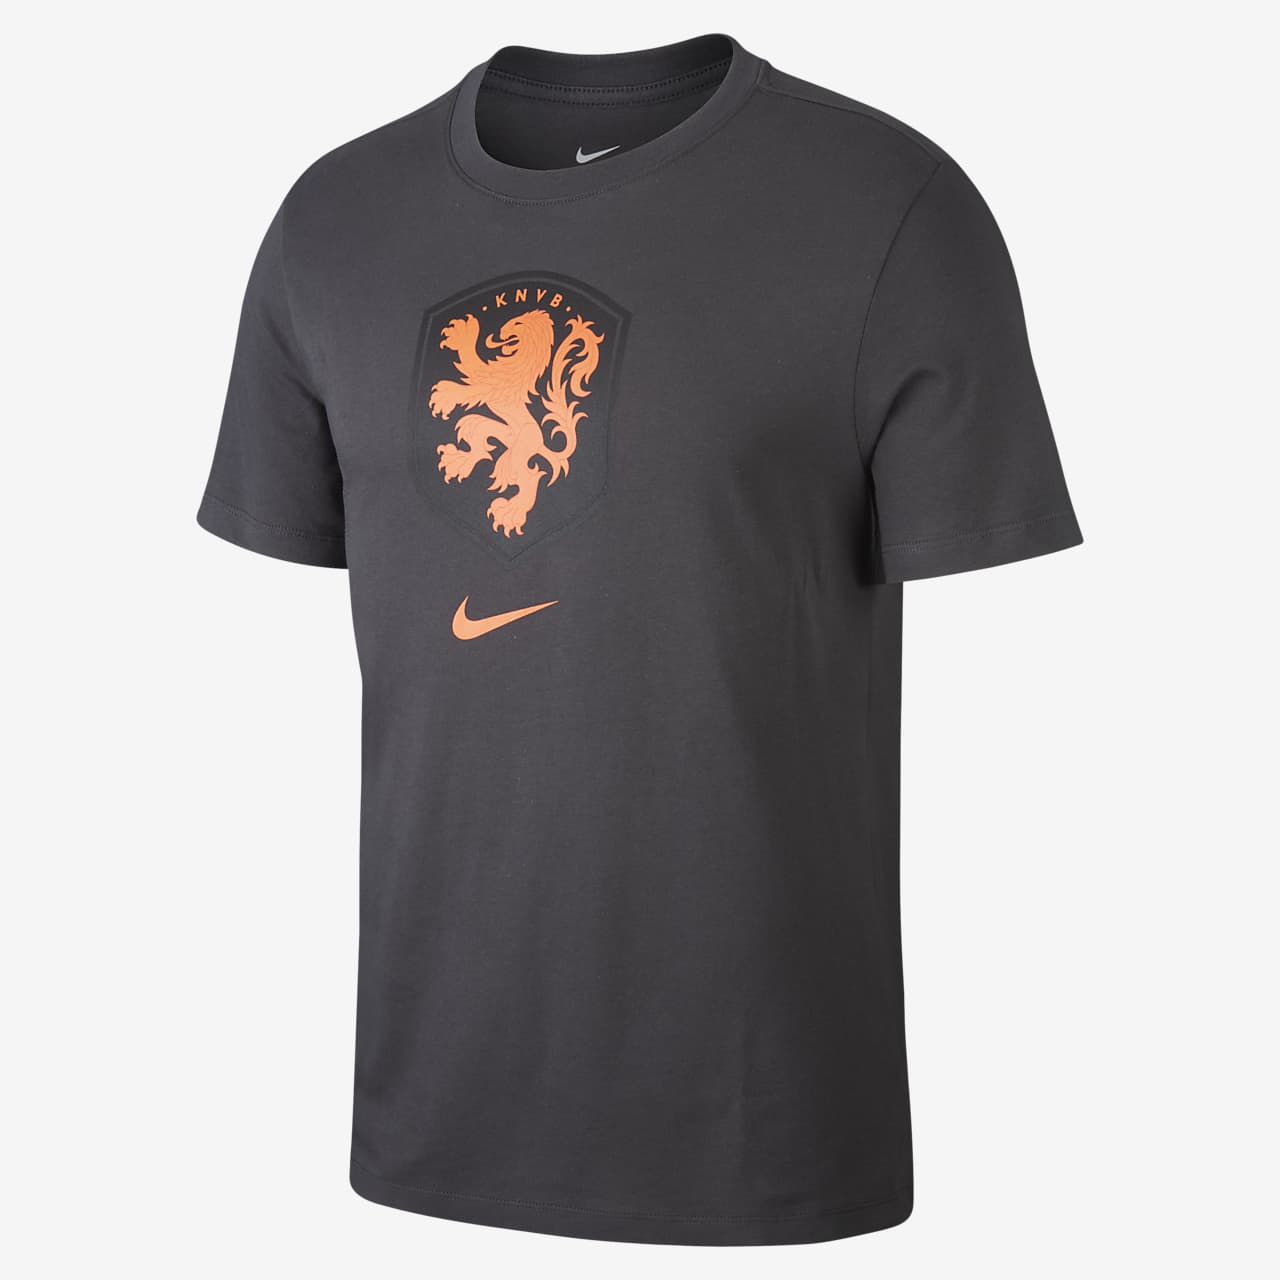 Netherlands Men's Football T-Shirt. Nike NZ